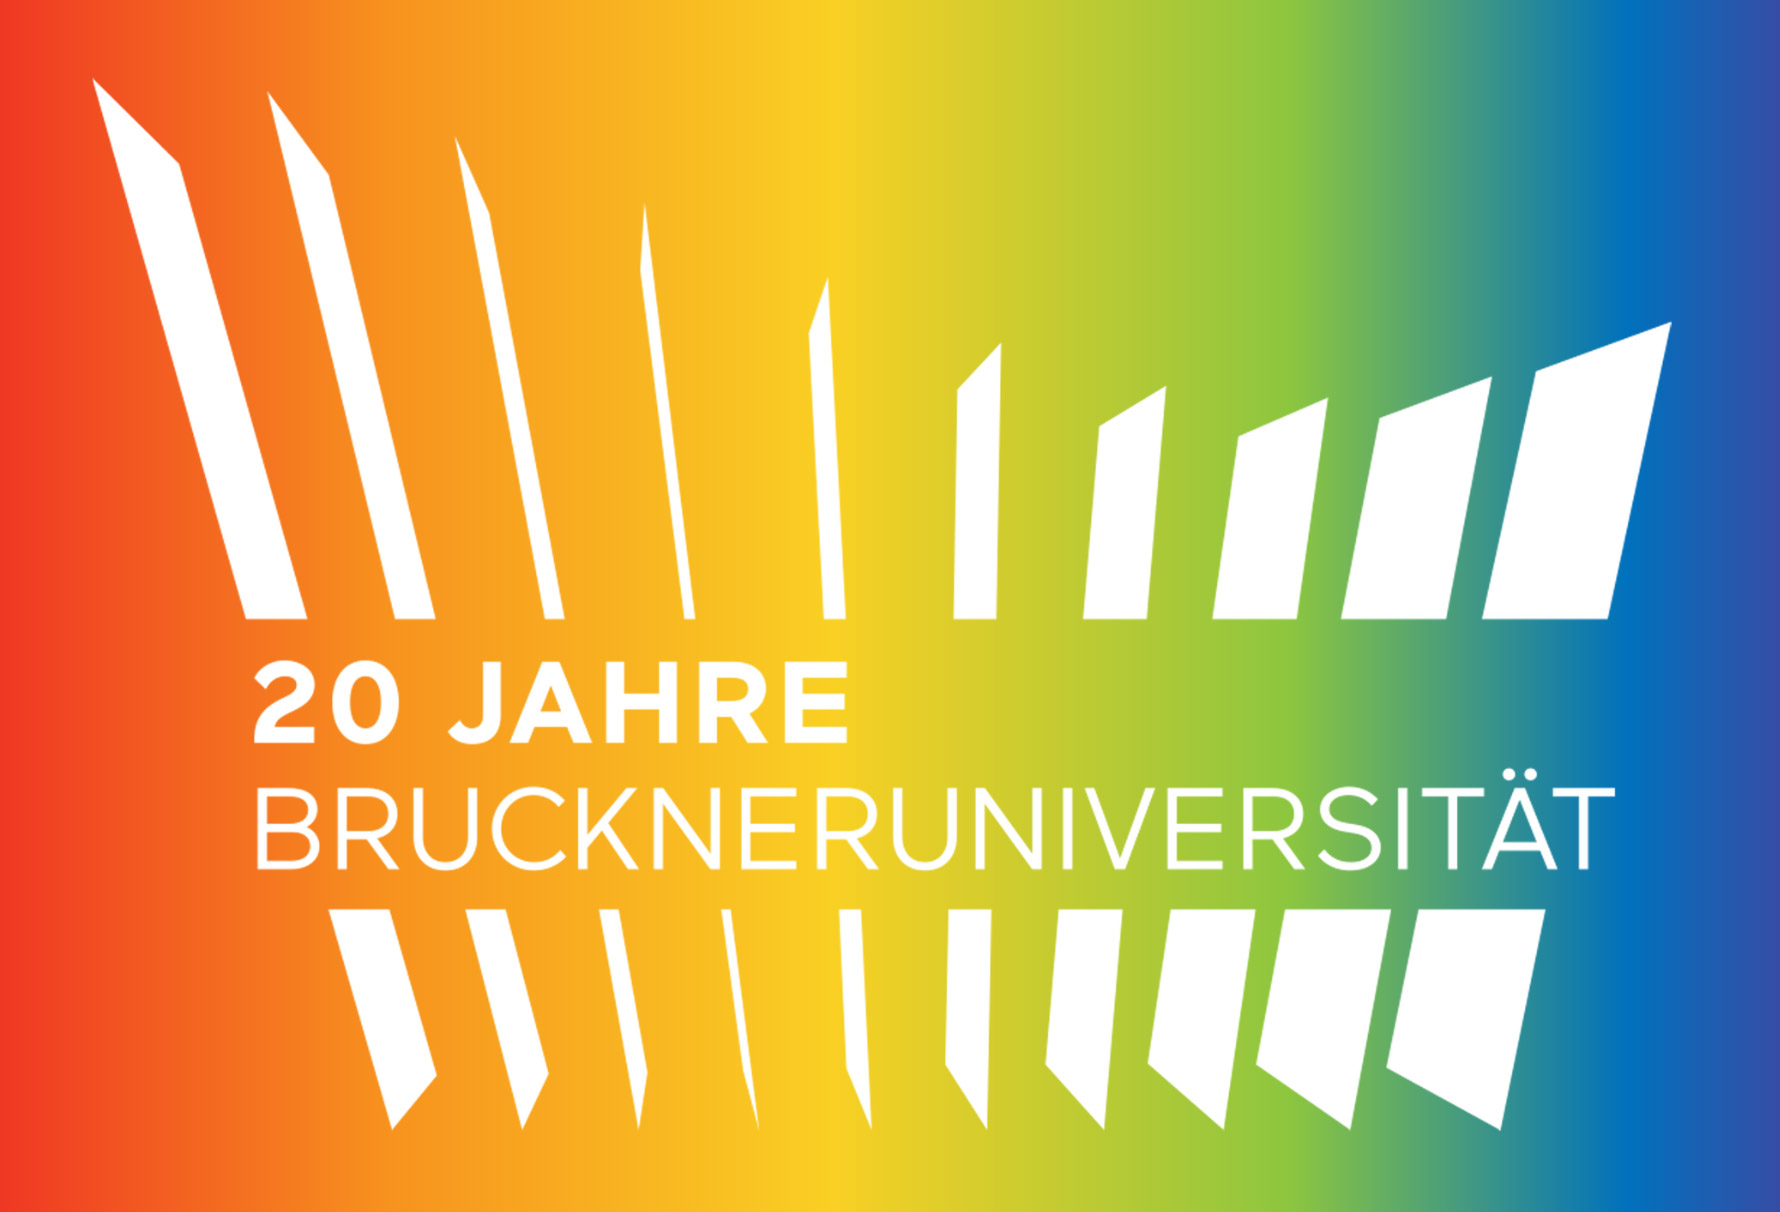 20 Jahre Bruckneruniversität